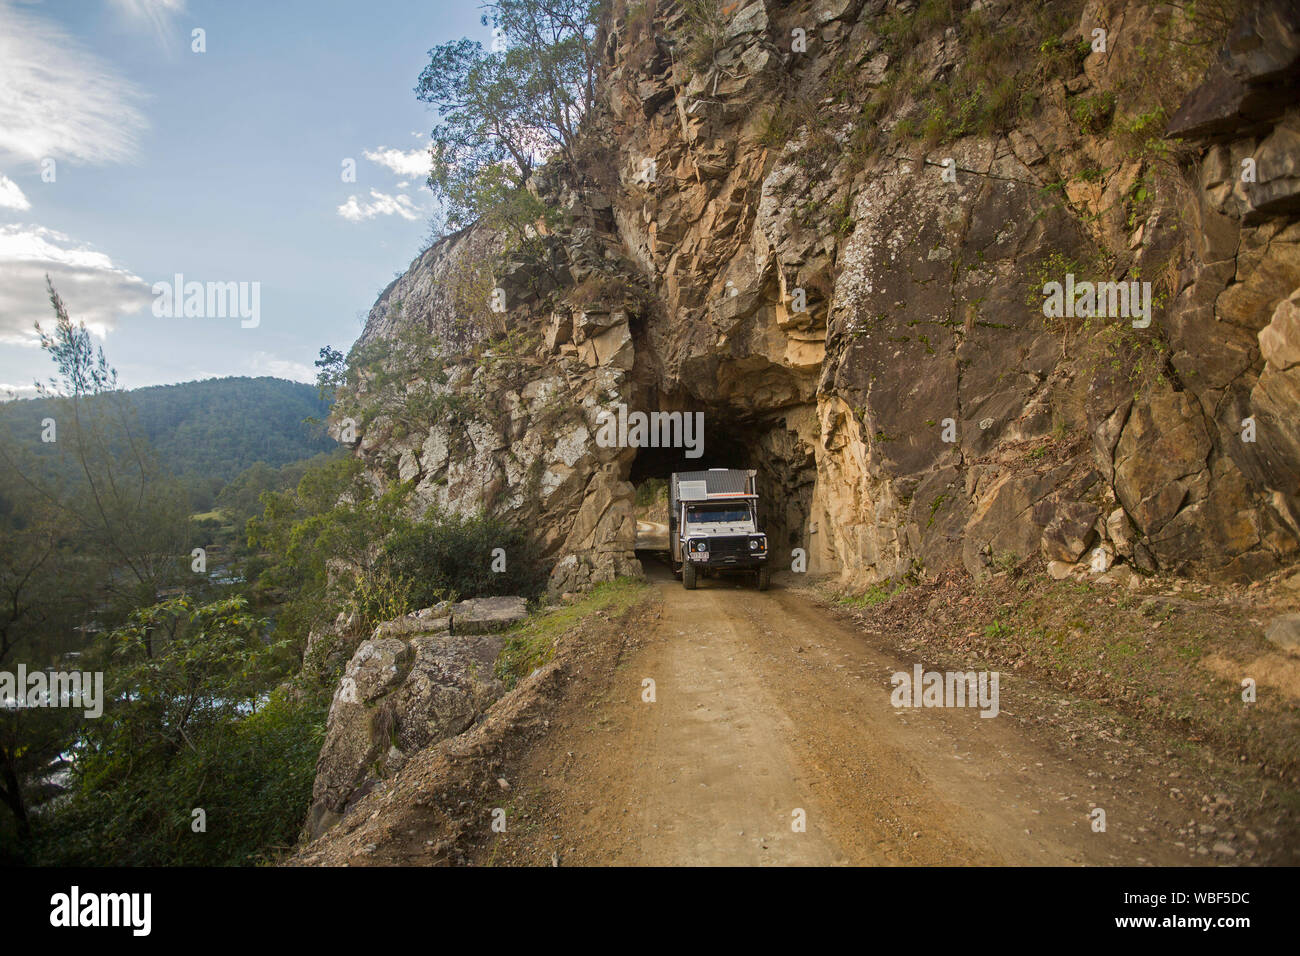 Un camping-car, en passant par un tunnel creusé à travers historique falaise rocheuse sur old coach road de Glen Innes à Grafton NSW Australie Banque D'Images